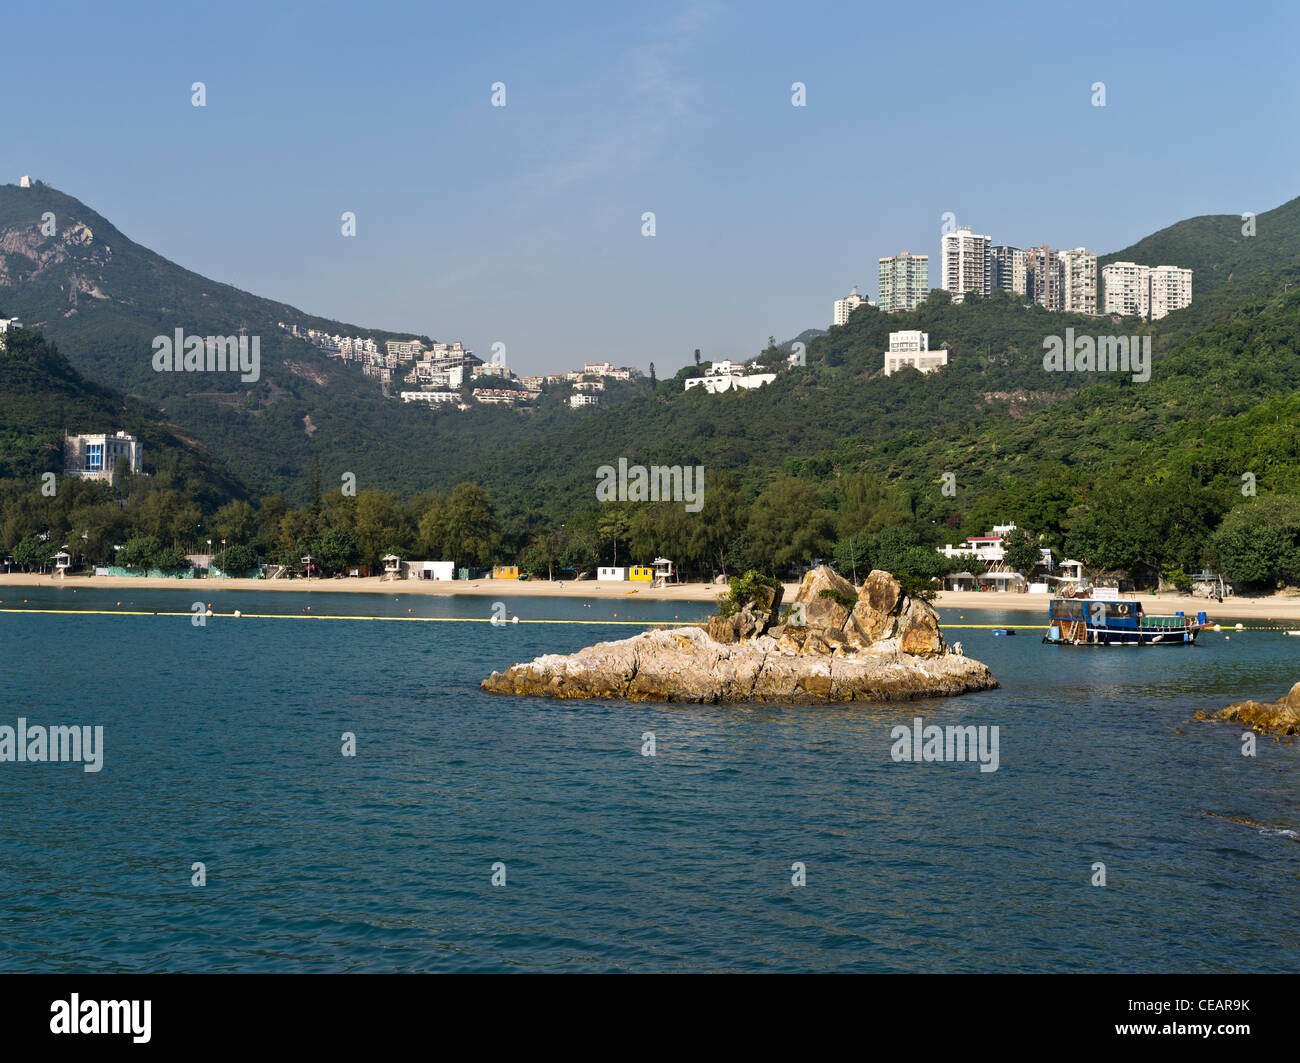 Dh agua profunda Bay en la isla de Hong Kong y la playa apartamentos con vistas a la bahía Foto de stock